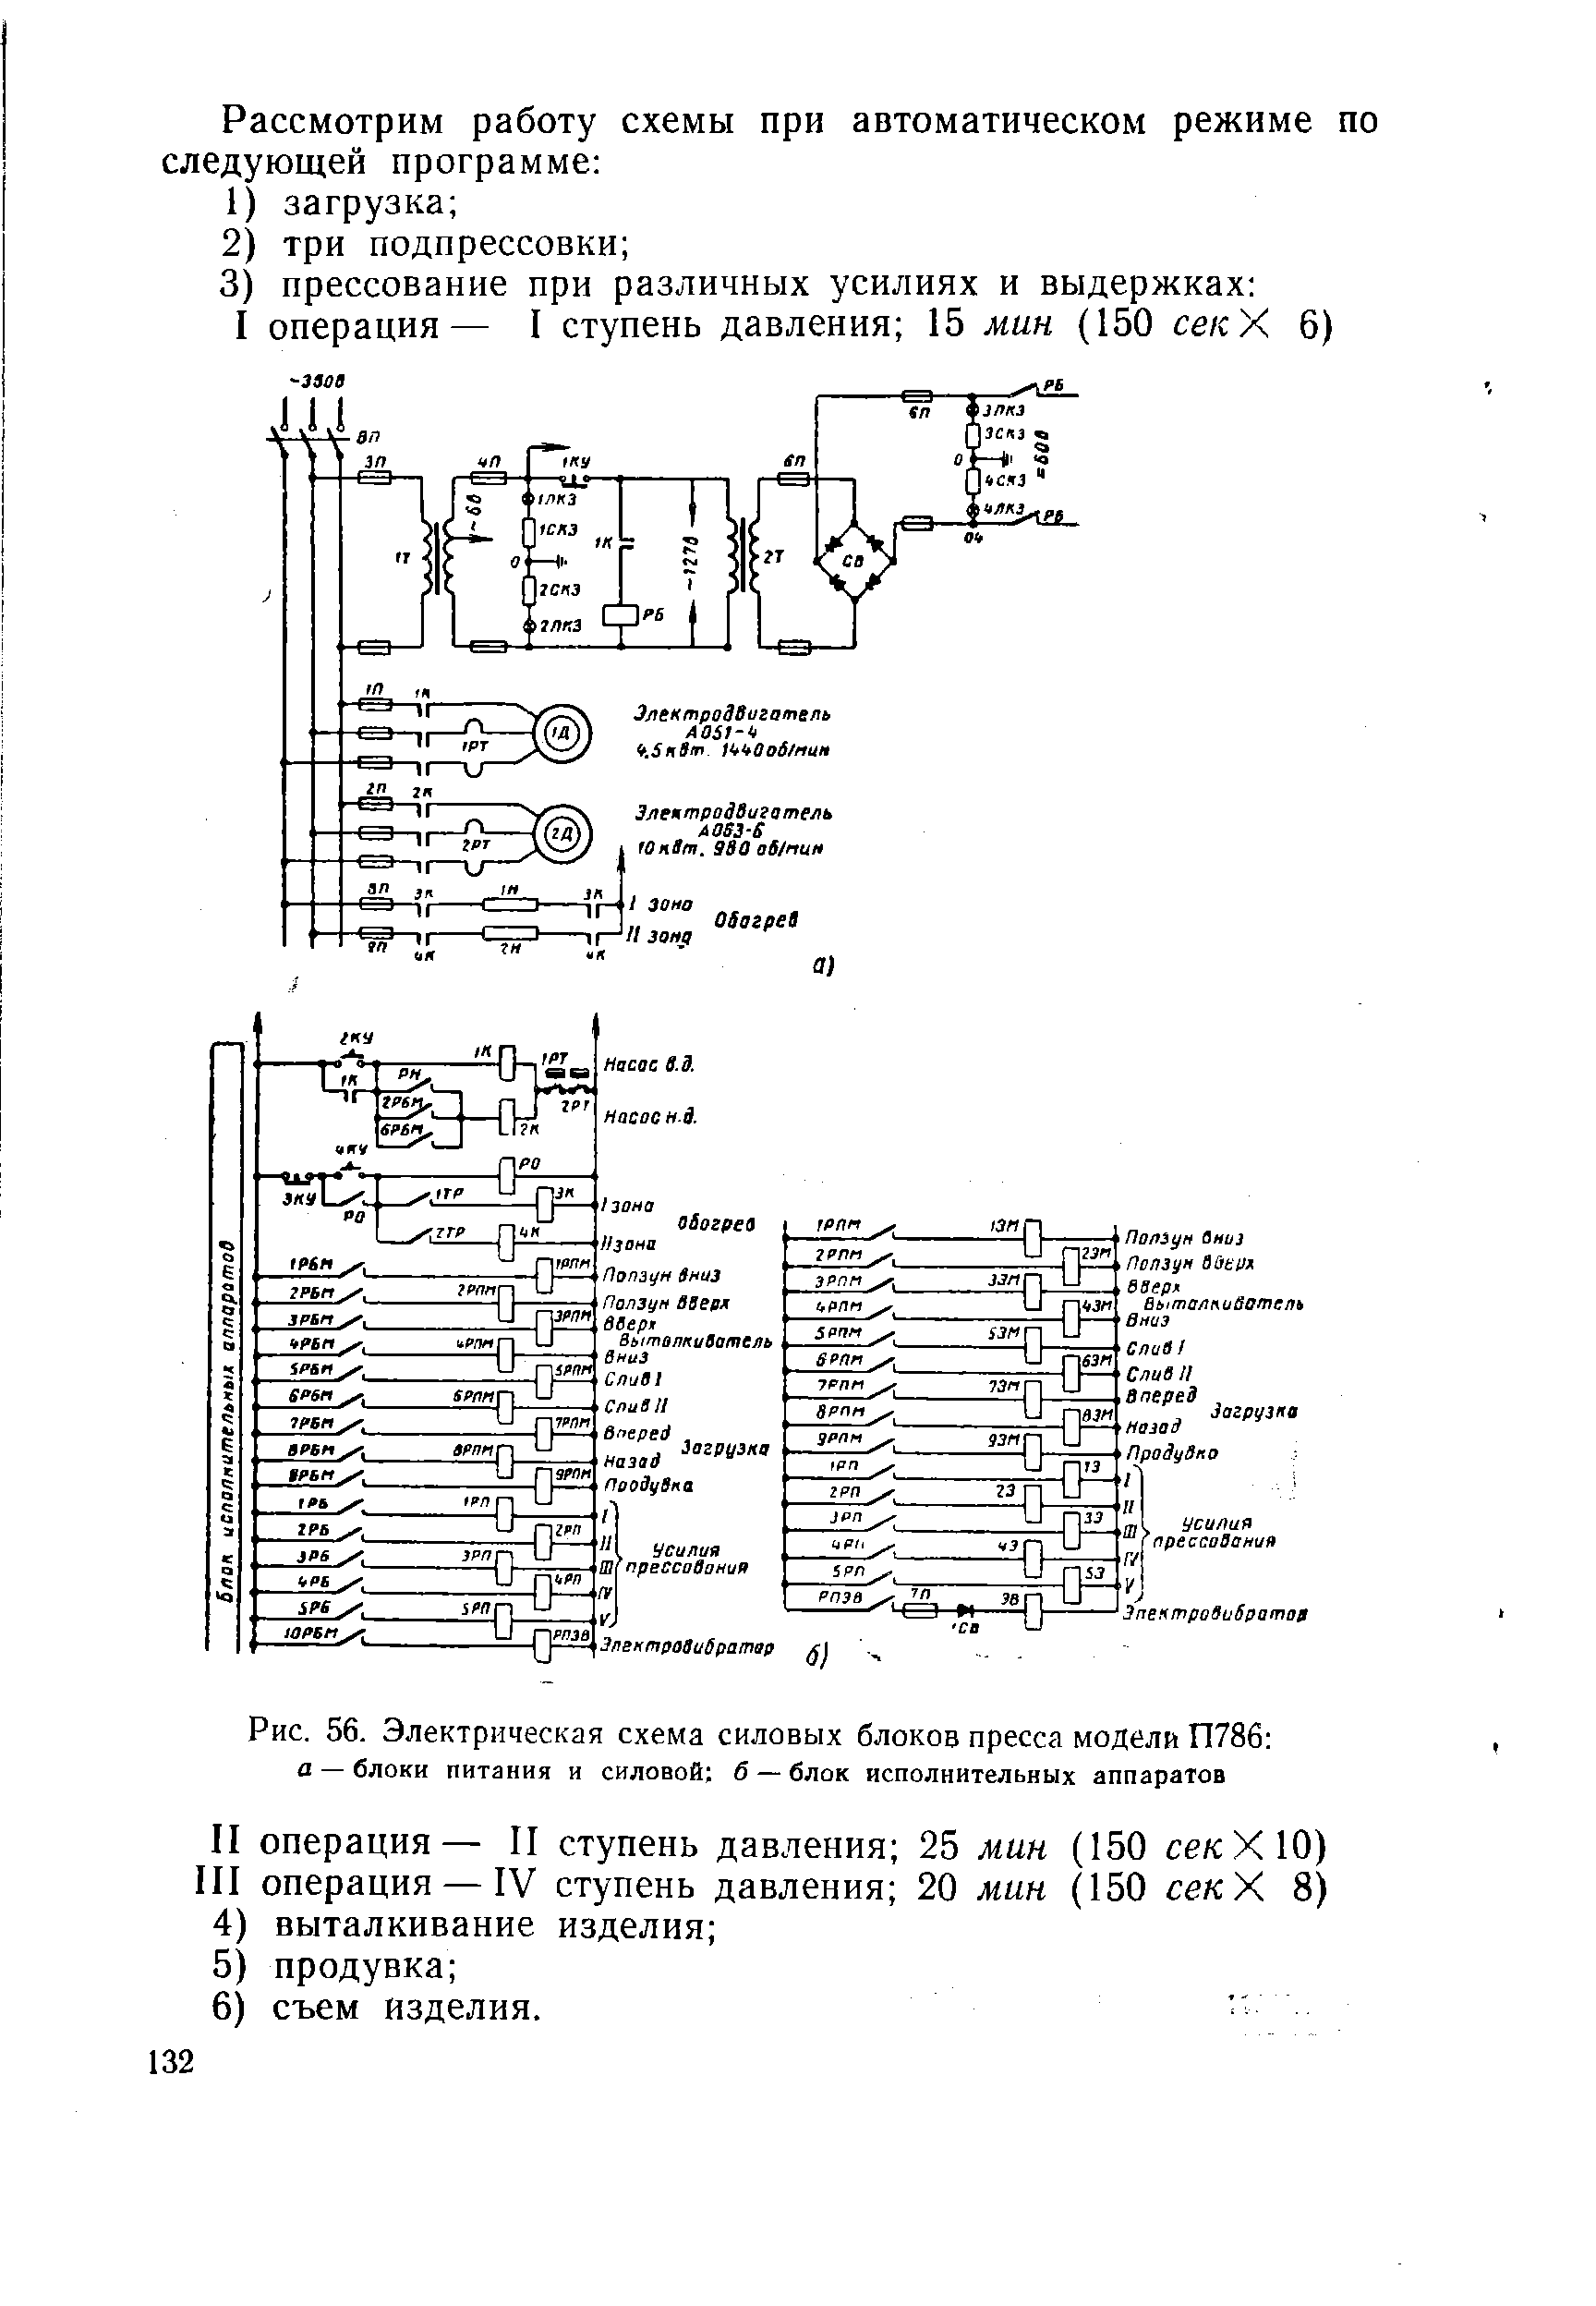 Рис. 56. Электрическая <a href="/info/731091">схема силовых блоков</a> пресса модели П786 
